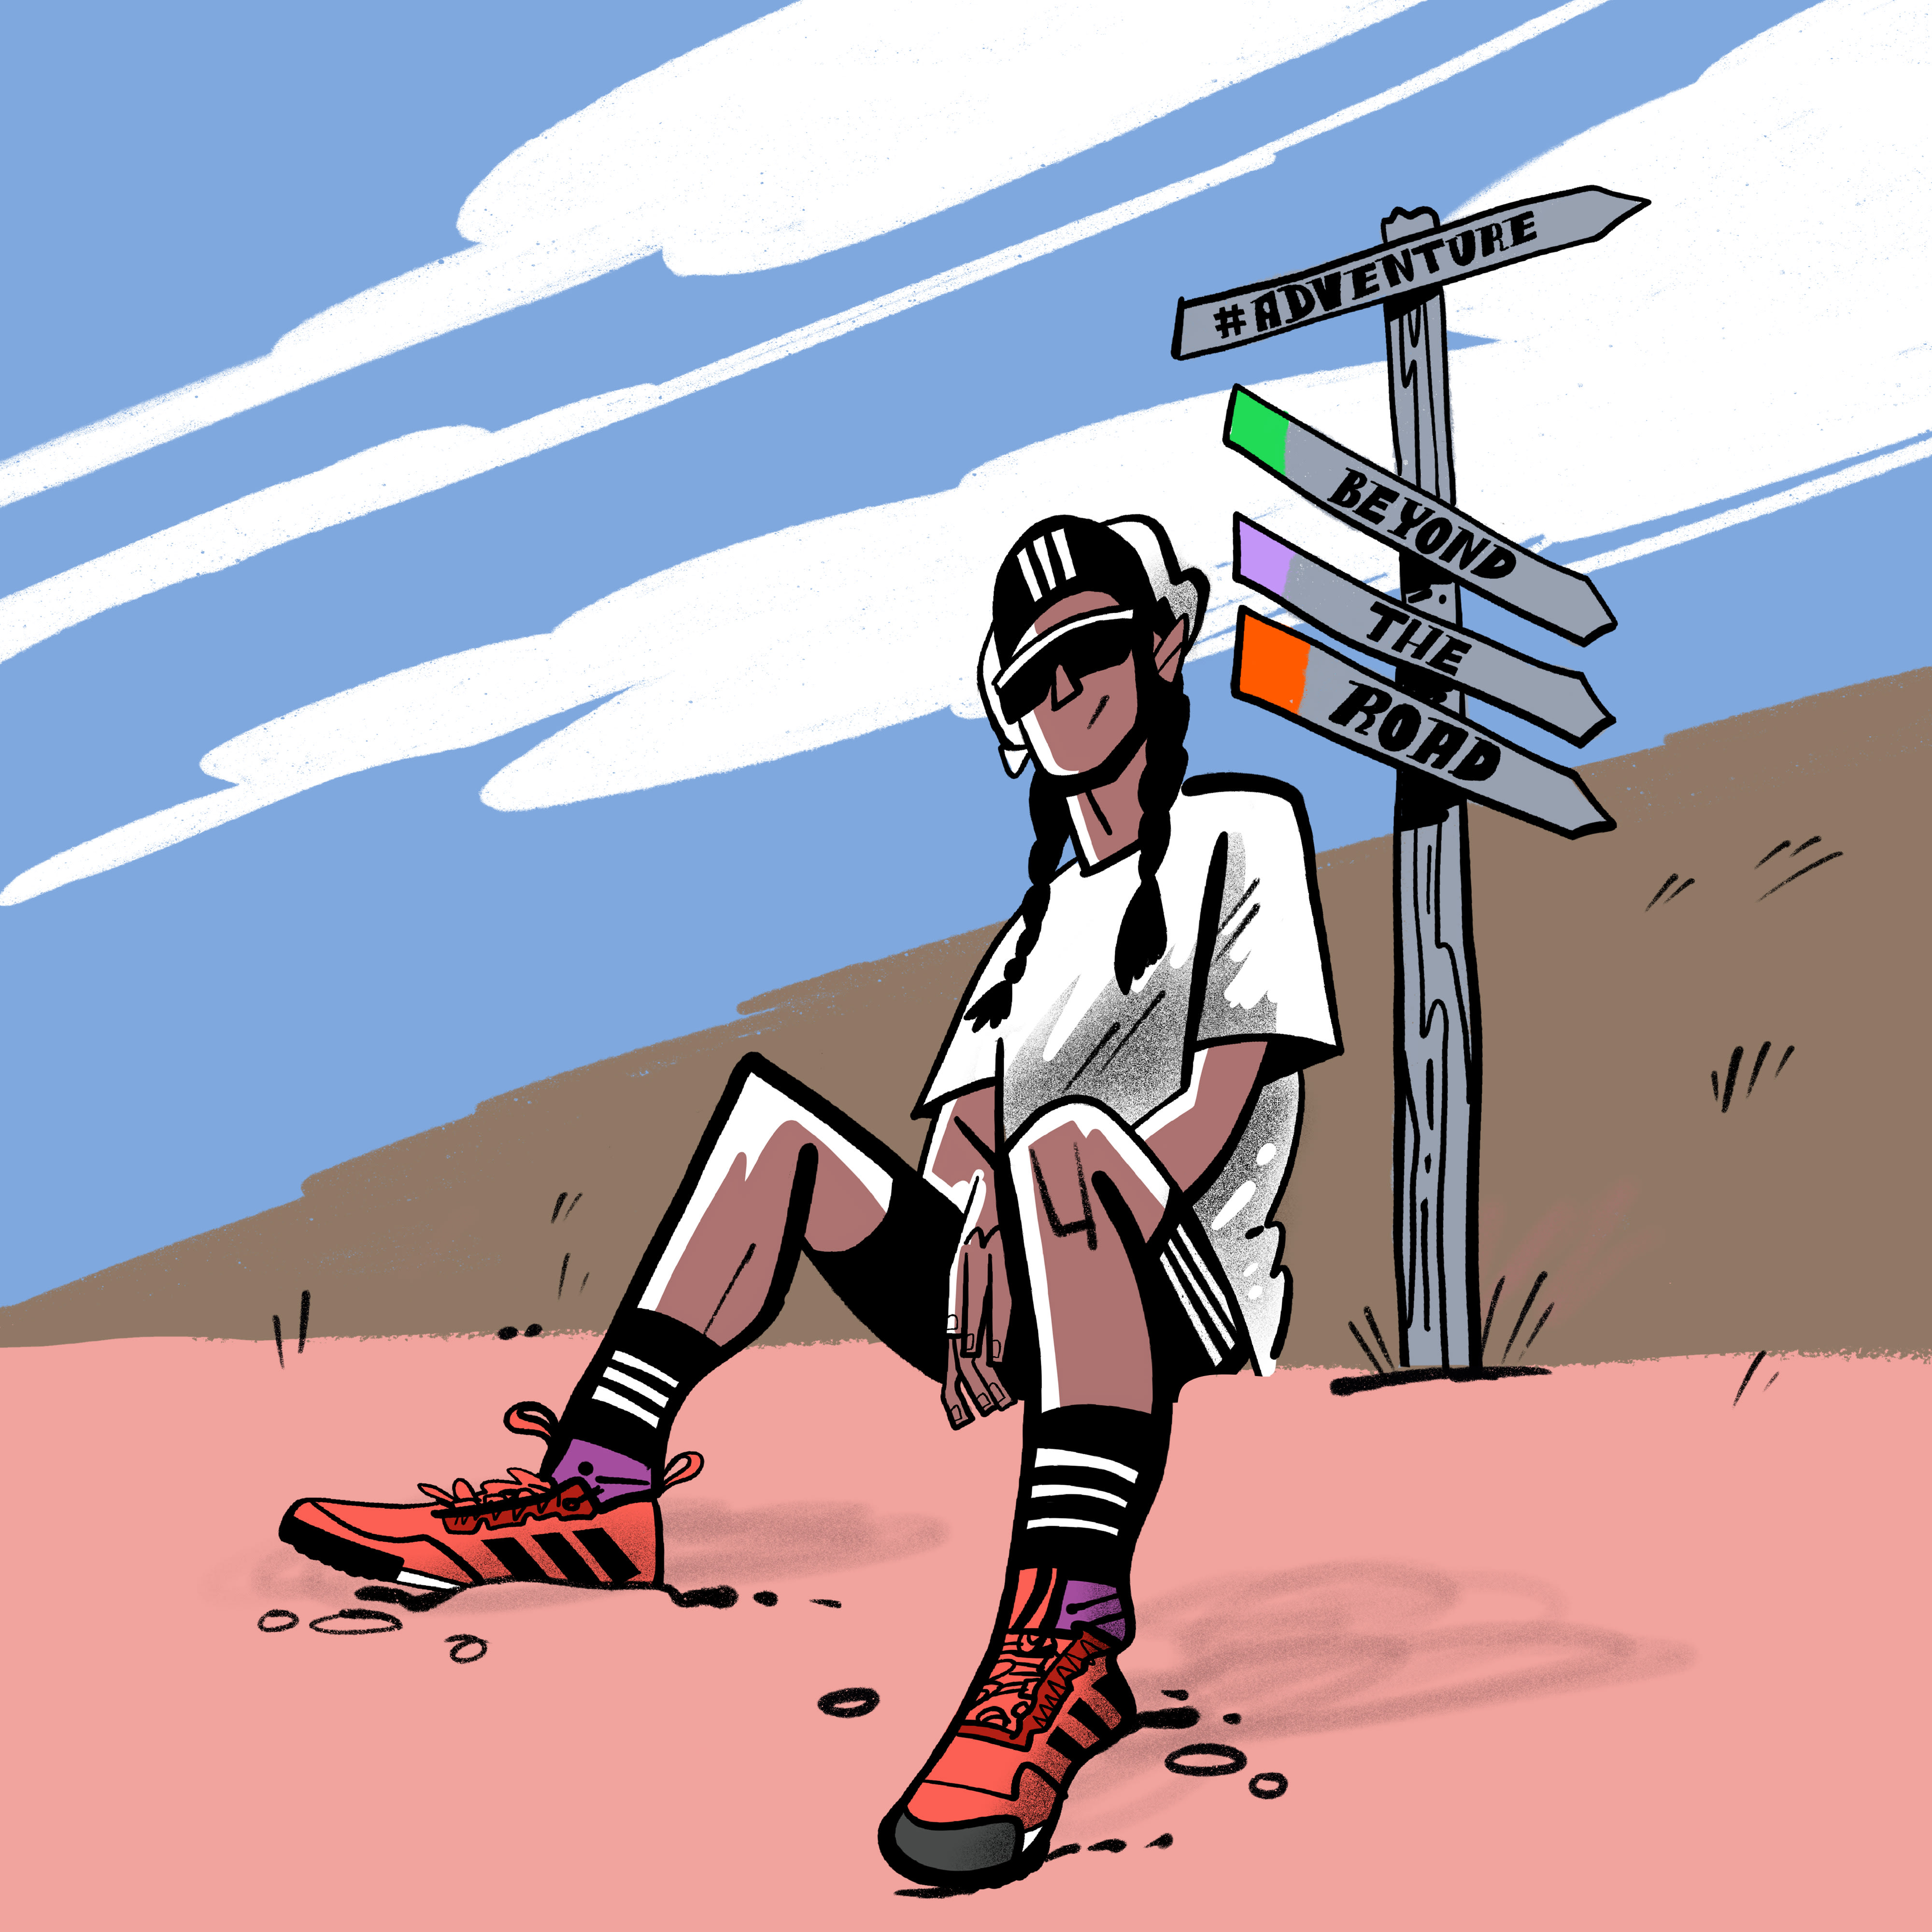 Ilustración a color de una persona sentada junto a una señal que dice